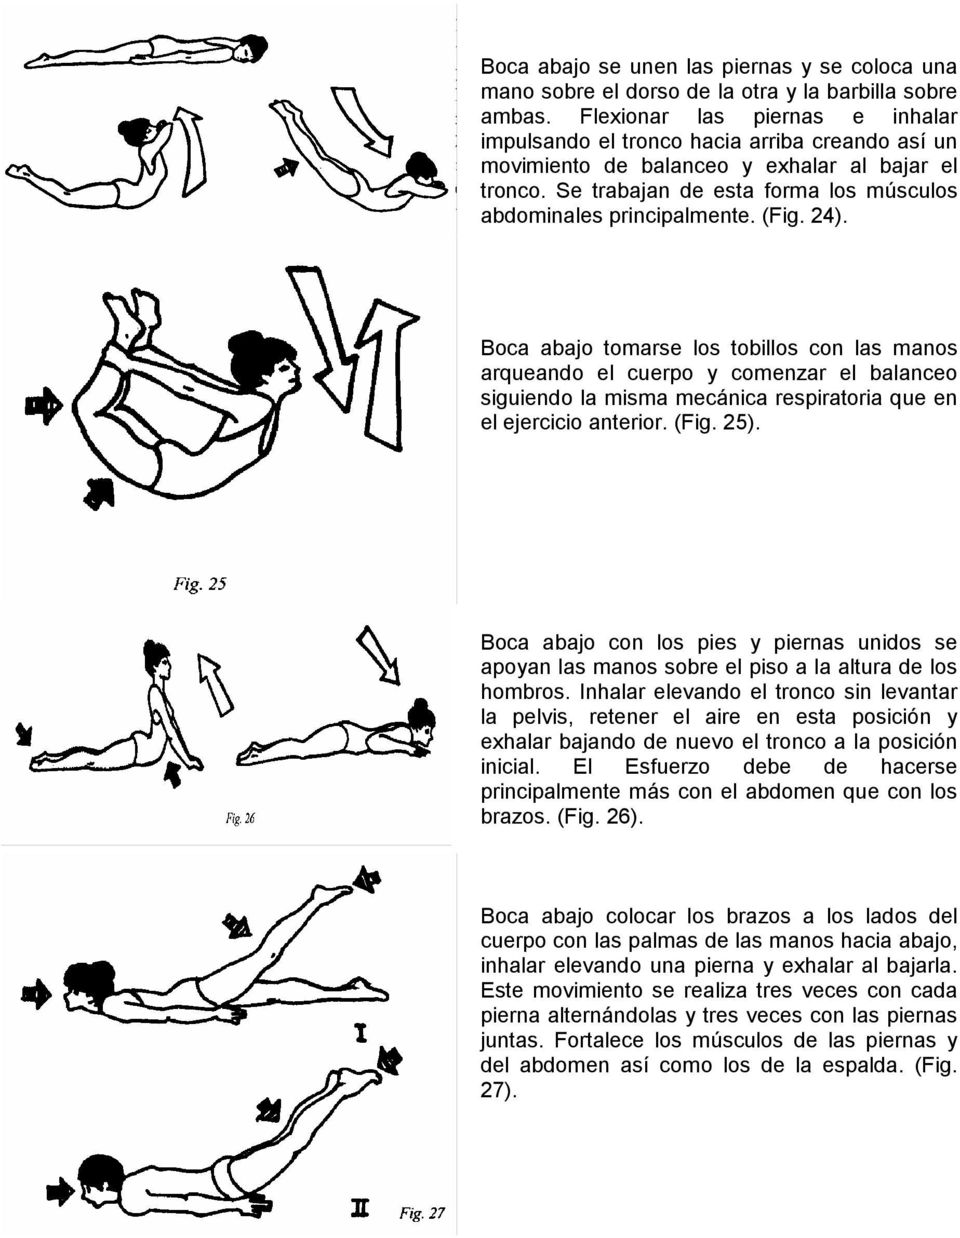 (Fig. 24). Boca abajo tomarse los tobillos con las manos arqueando el cuerpo y comenzar el balanceo siguiendo la misma mecánica respiratoria que en el ejercicio anterior. (Fig. 25).